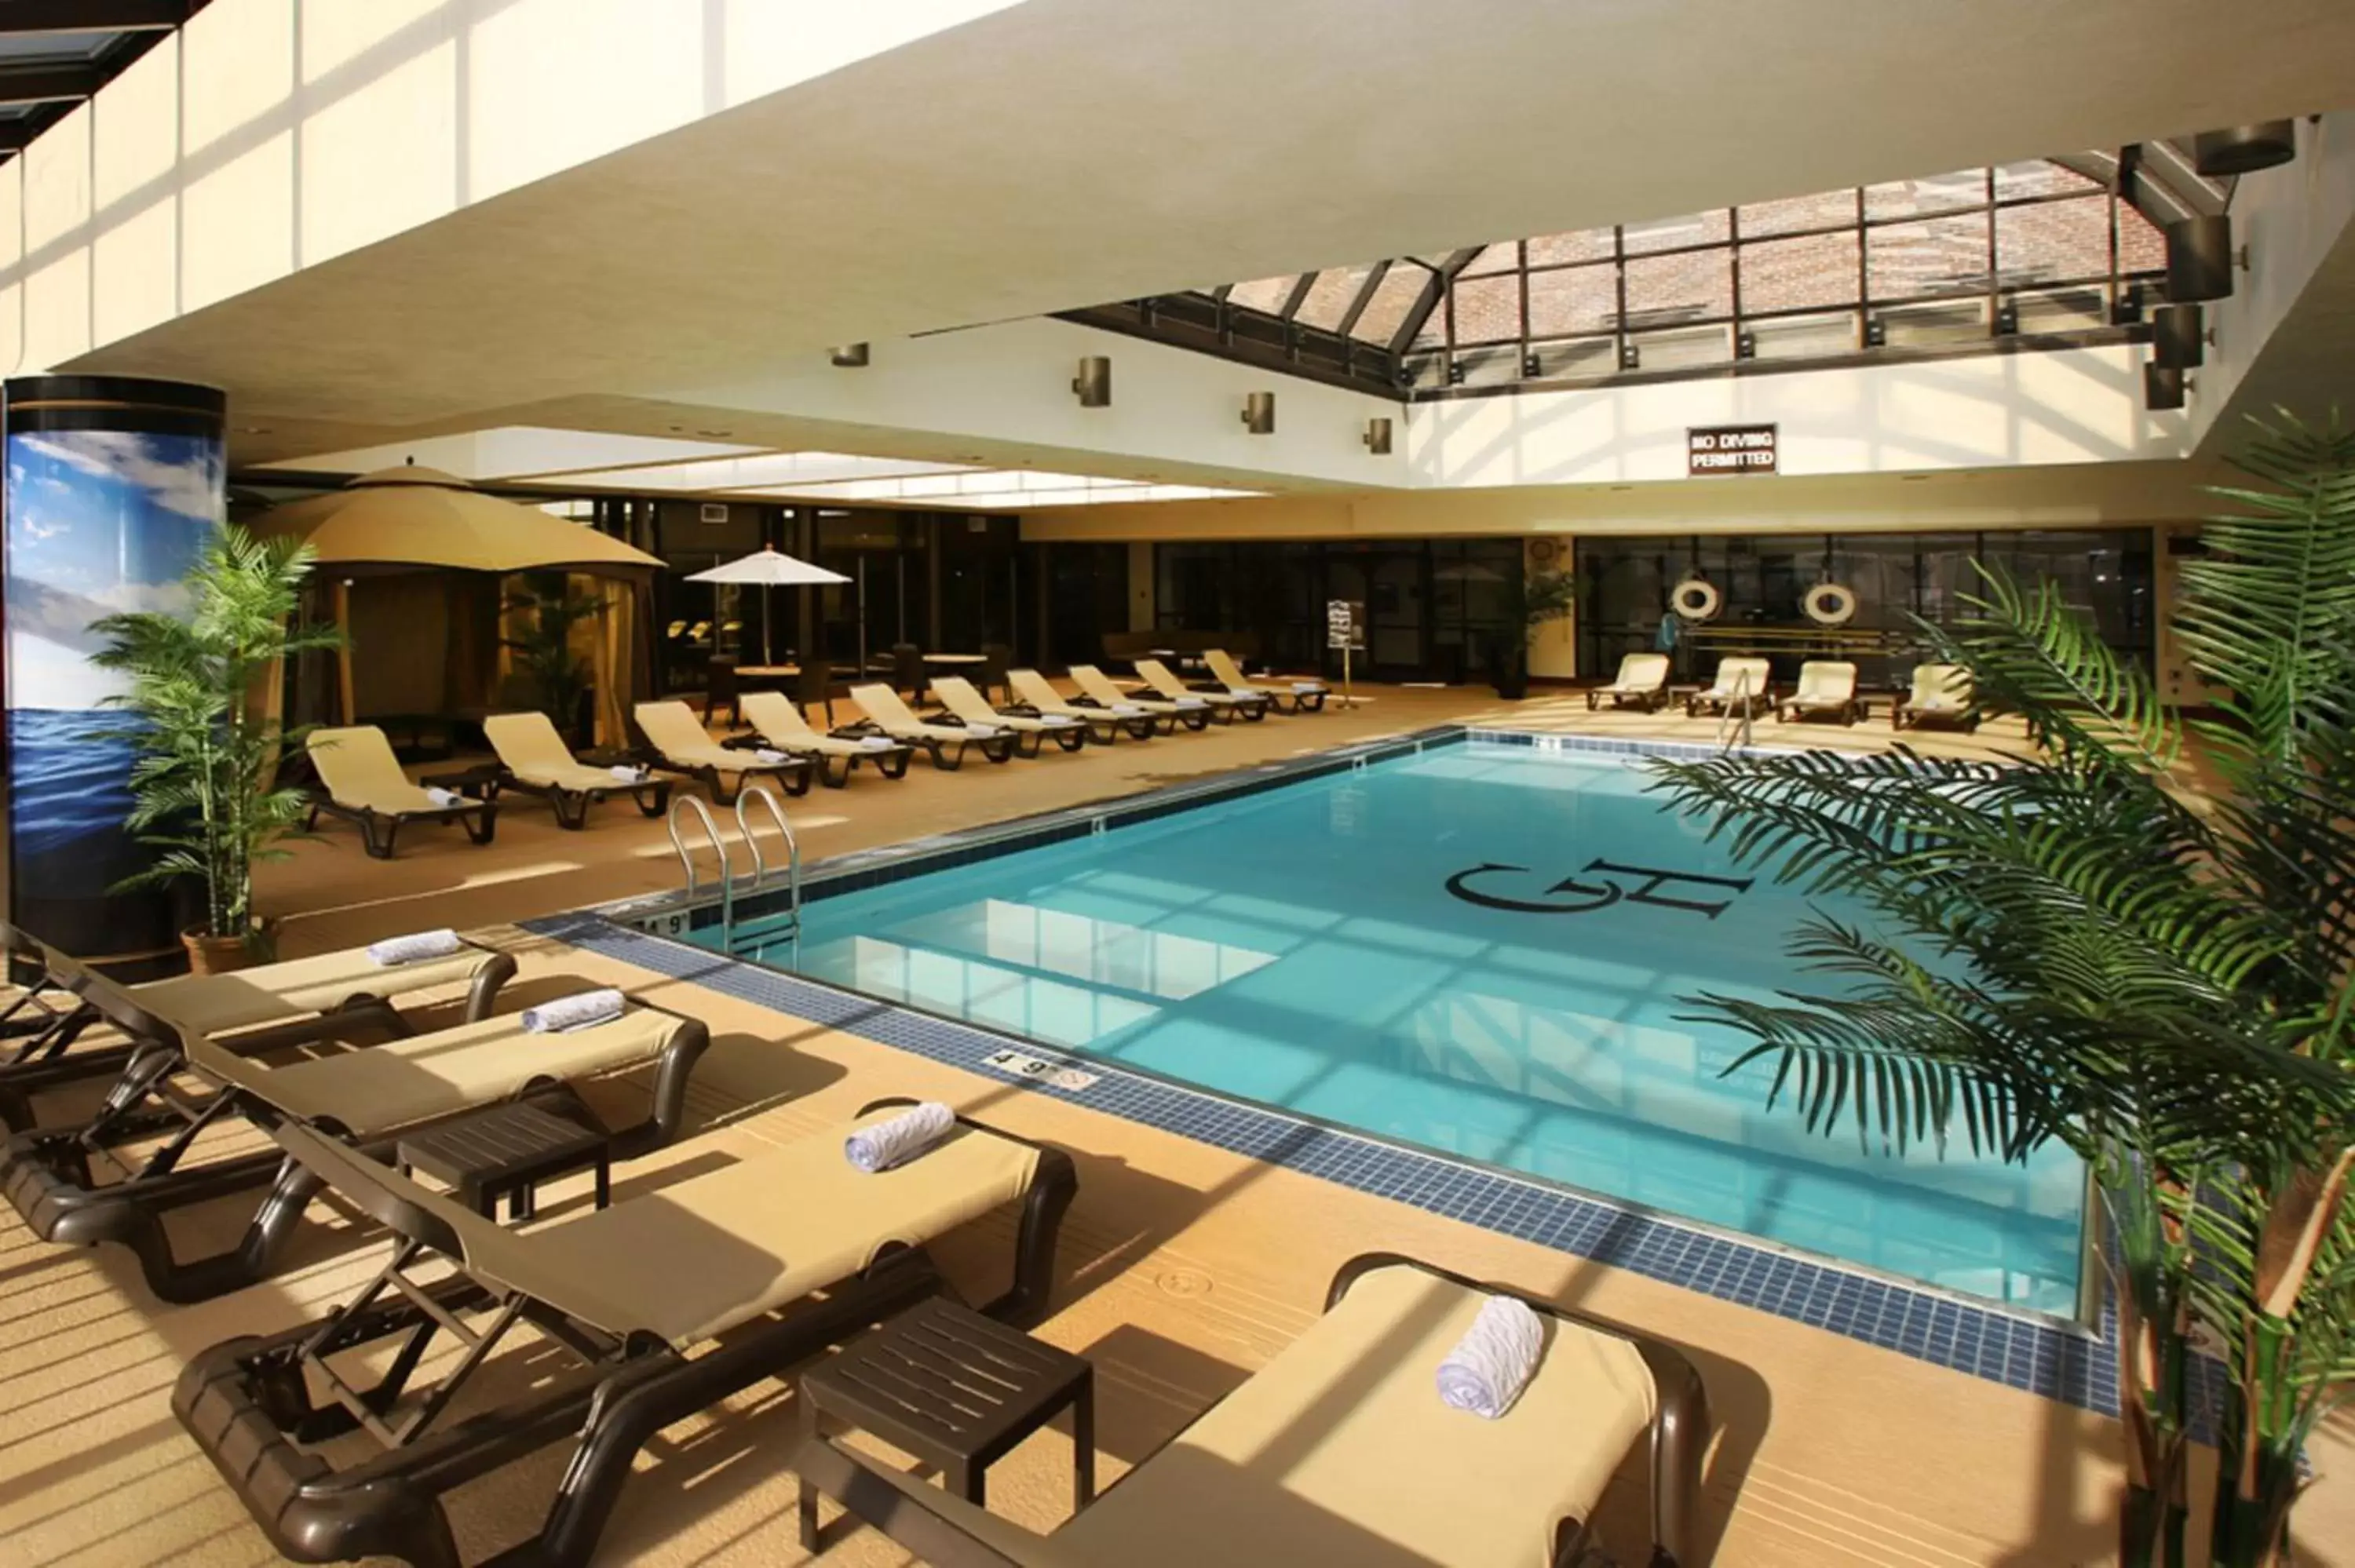 Swimming pool in The Claridge Hotel